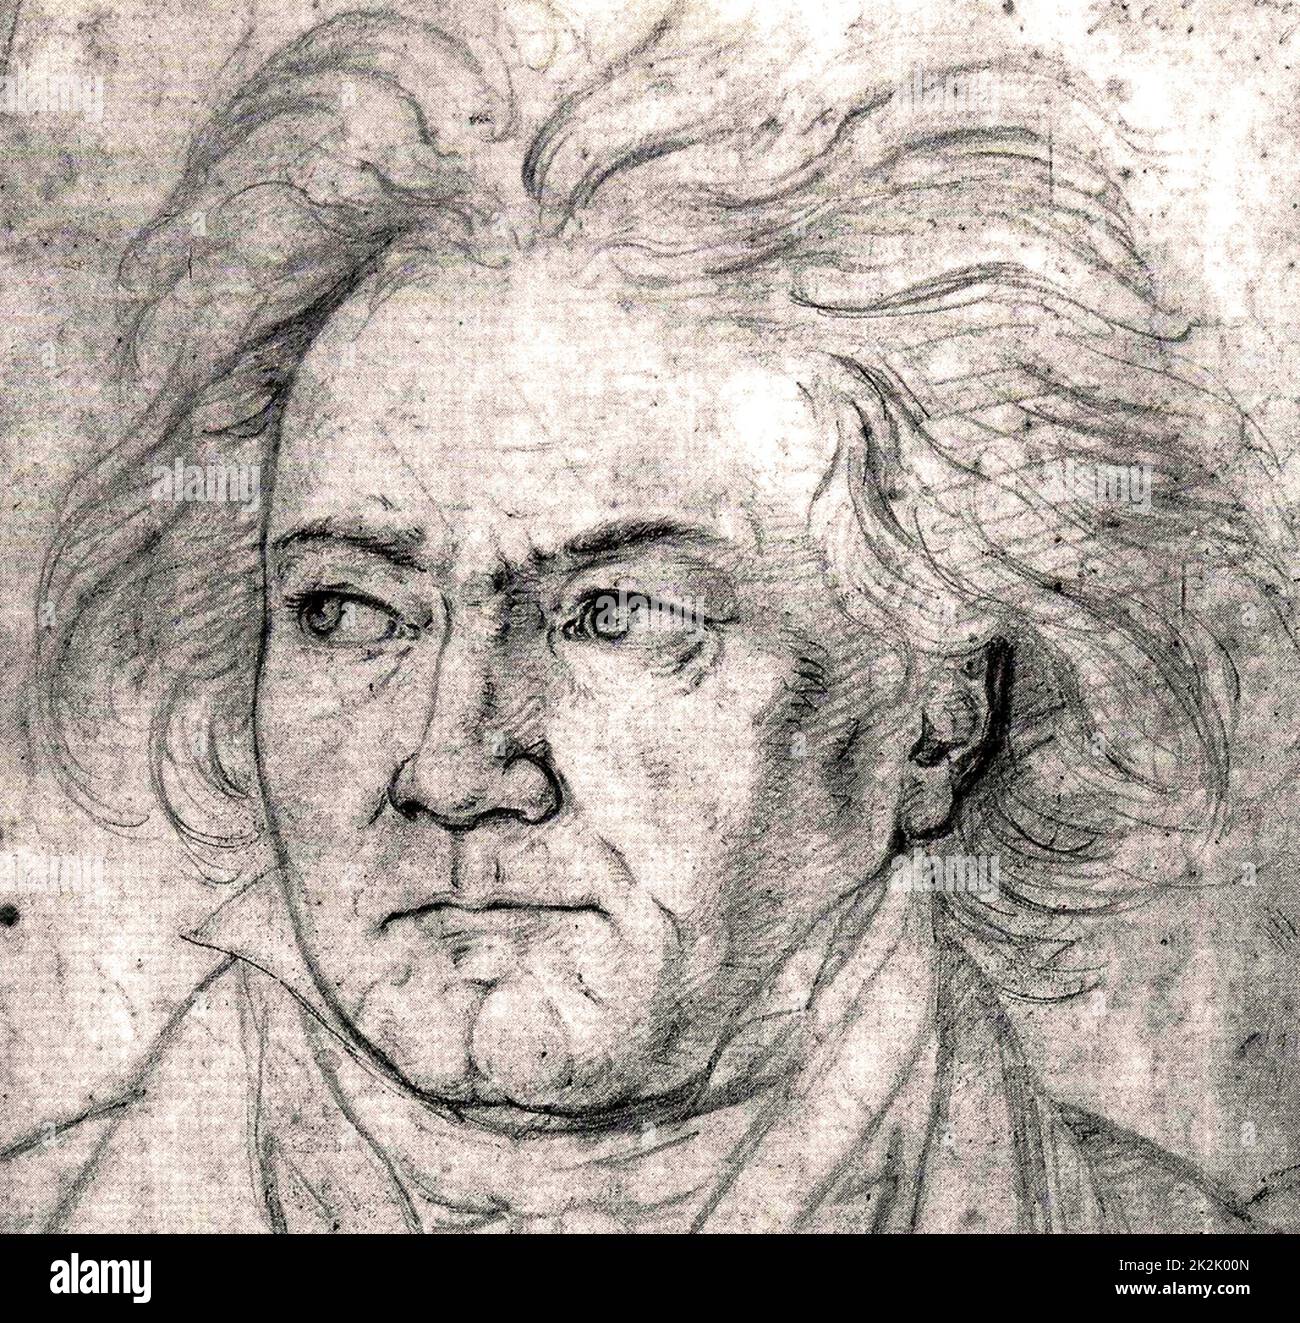 Ludwig van Beethoven (16. Dezember 1770 - vom 26. März 1827) war ein deutscher Komponist und Pianist. Er war eine zentrale Figur in der Übergangszeit zwischen der Klassik und Romantik in westlicher klassischer Musik, und ist einer der renommiertesten und einflussreichsten Komponisten aller Zeiten. Portrait von Beethoven 1818 von August Klöber Stockfoto